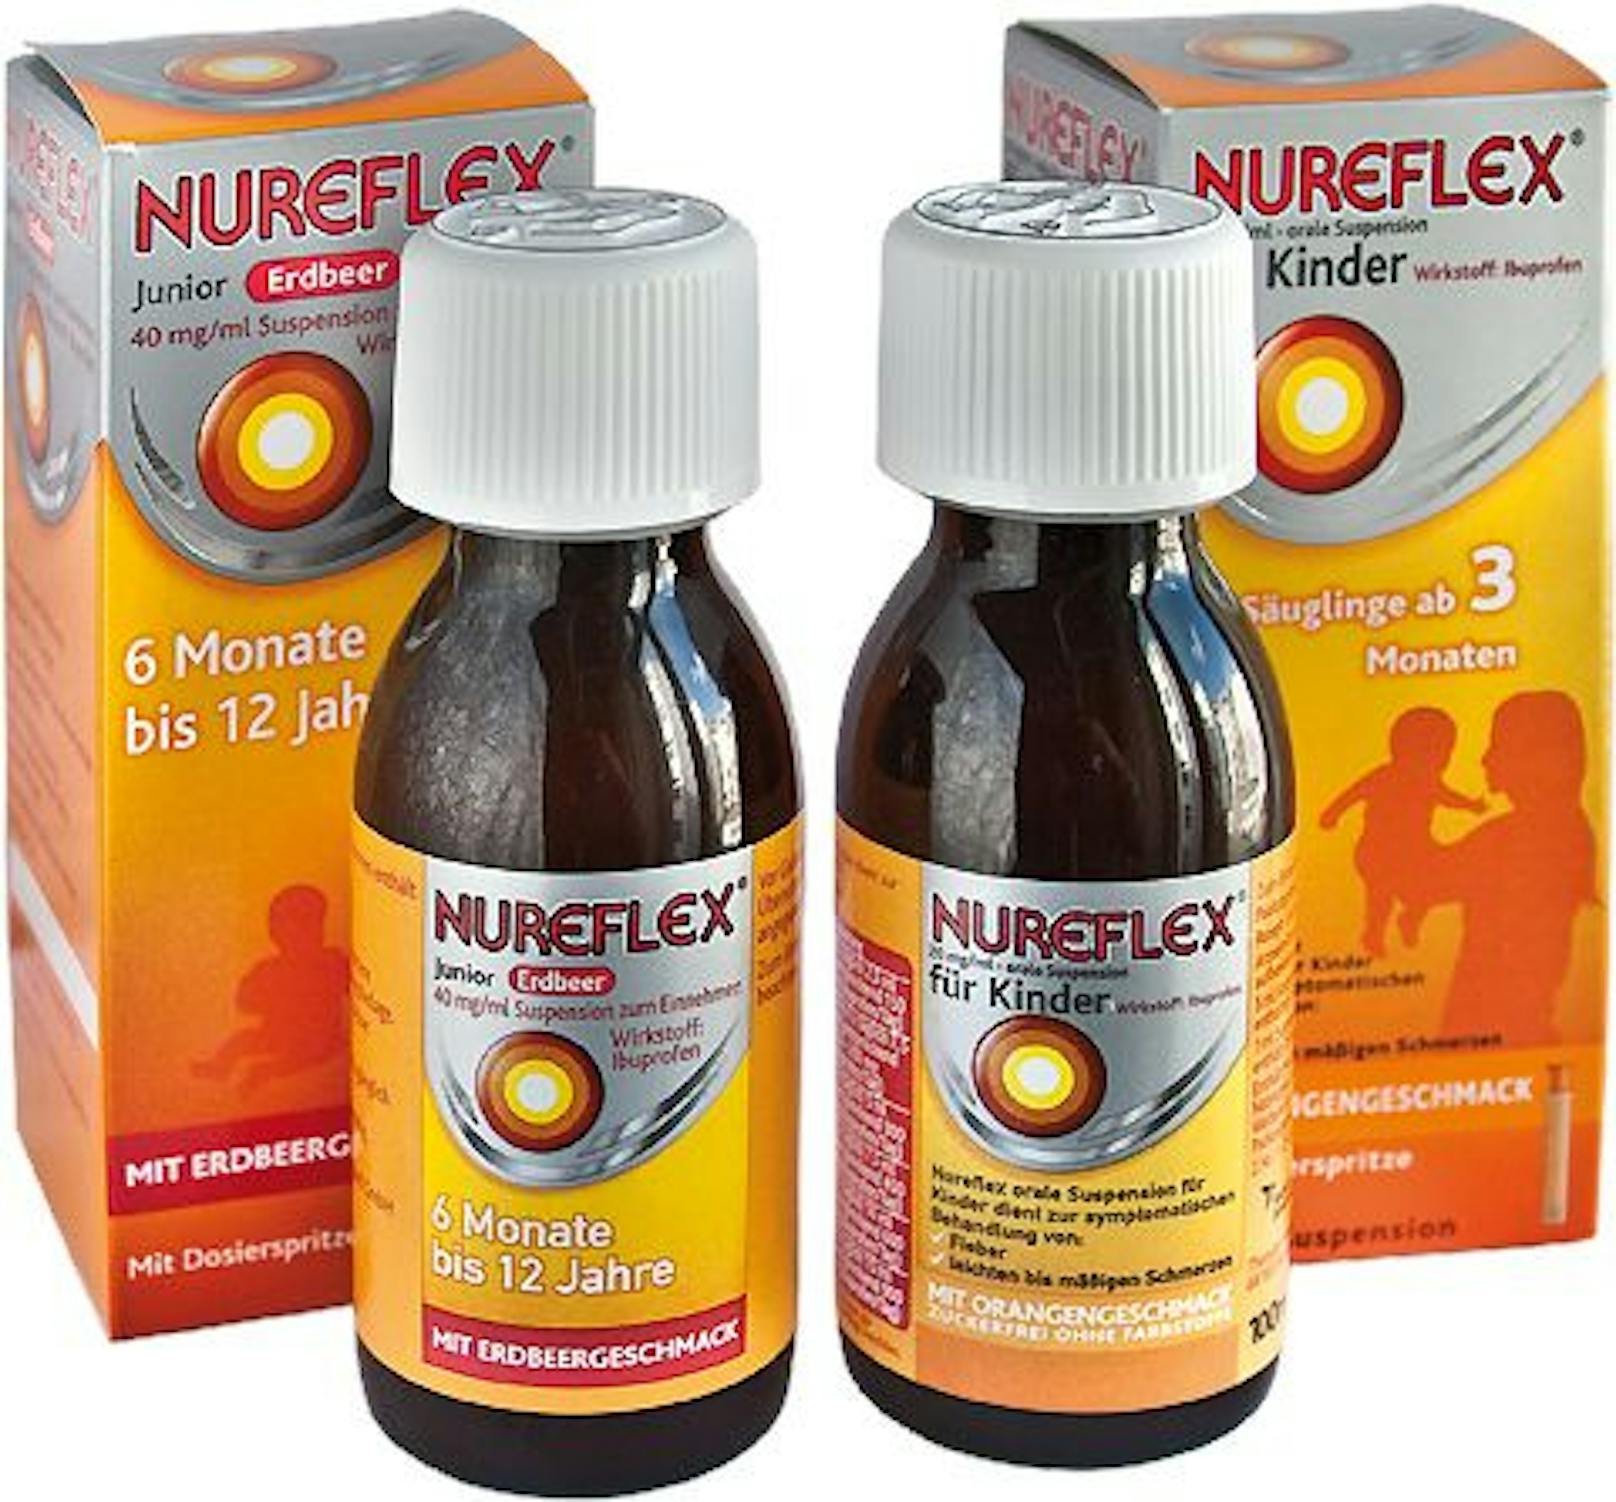 Fiebersenkende Säfte wie der Nureflex sind oft ausverkauft.